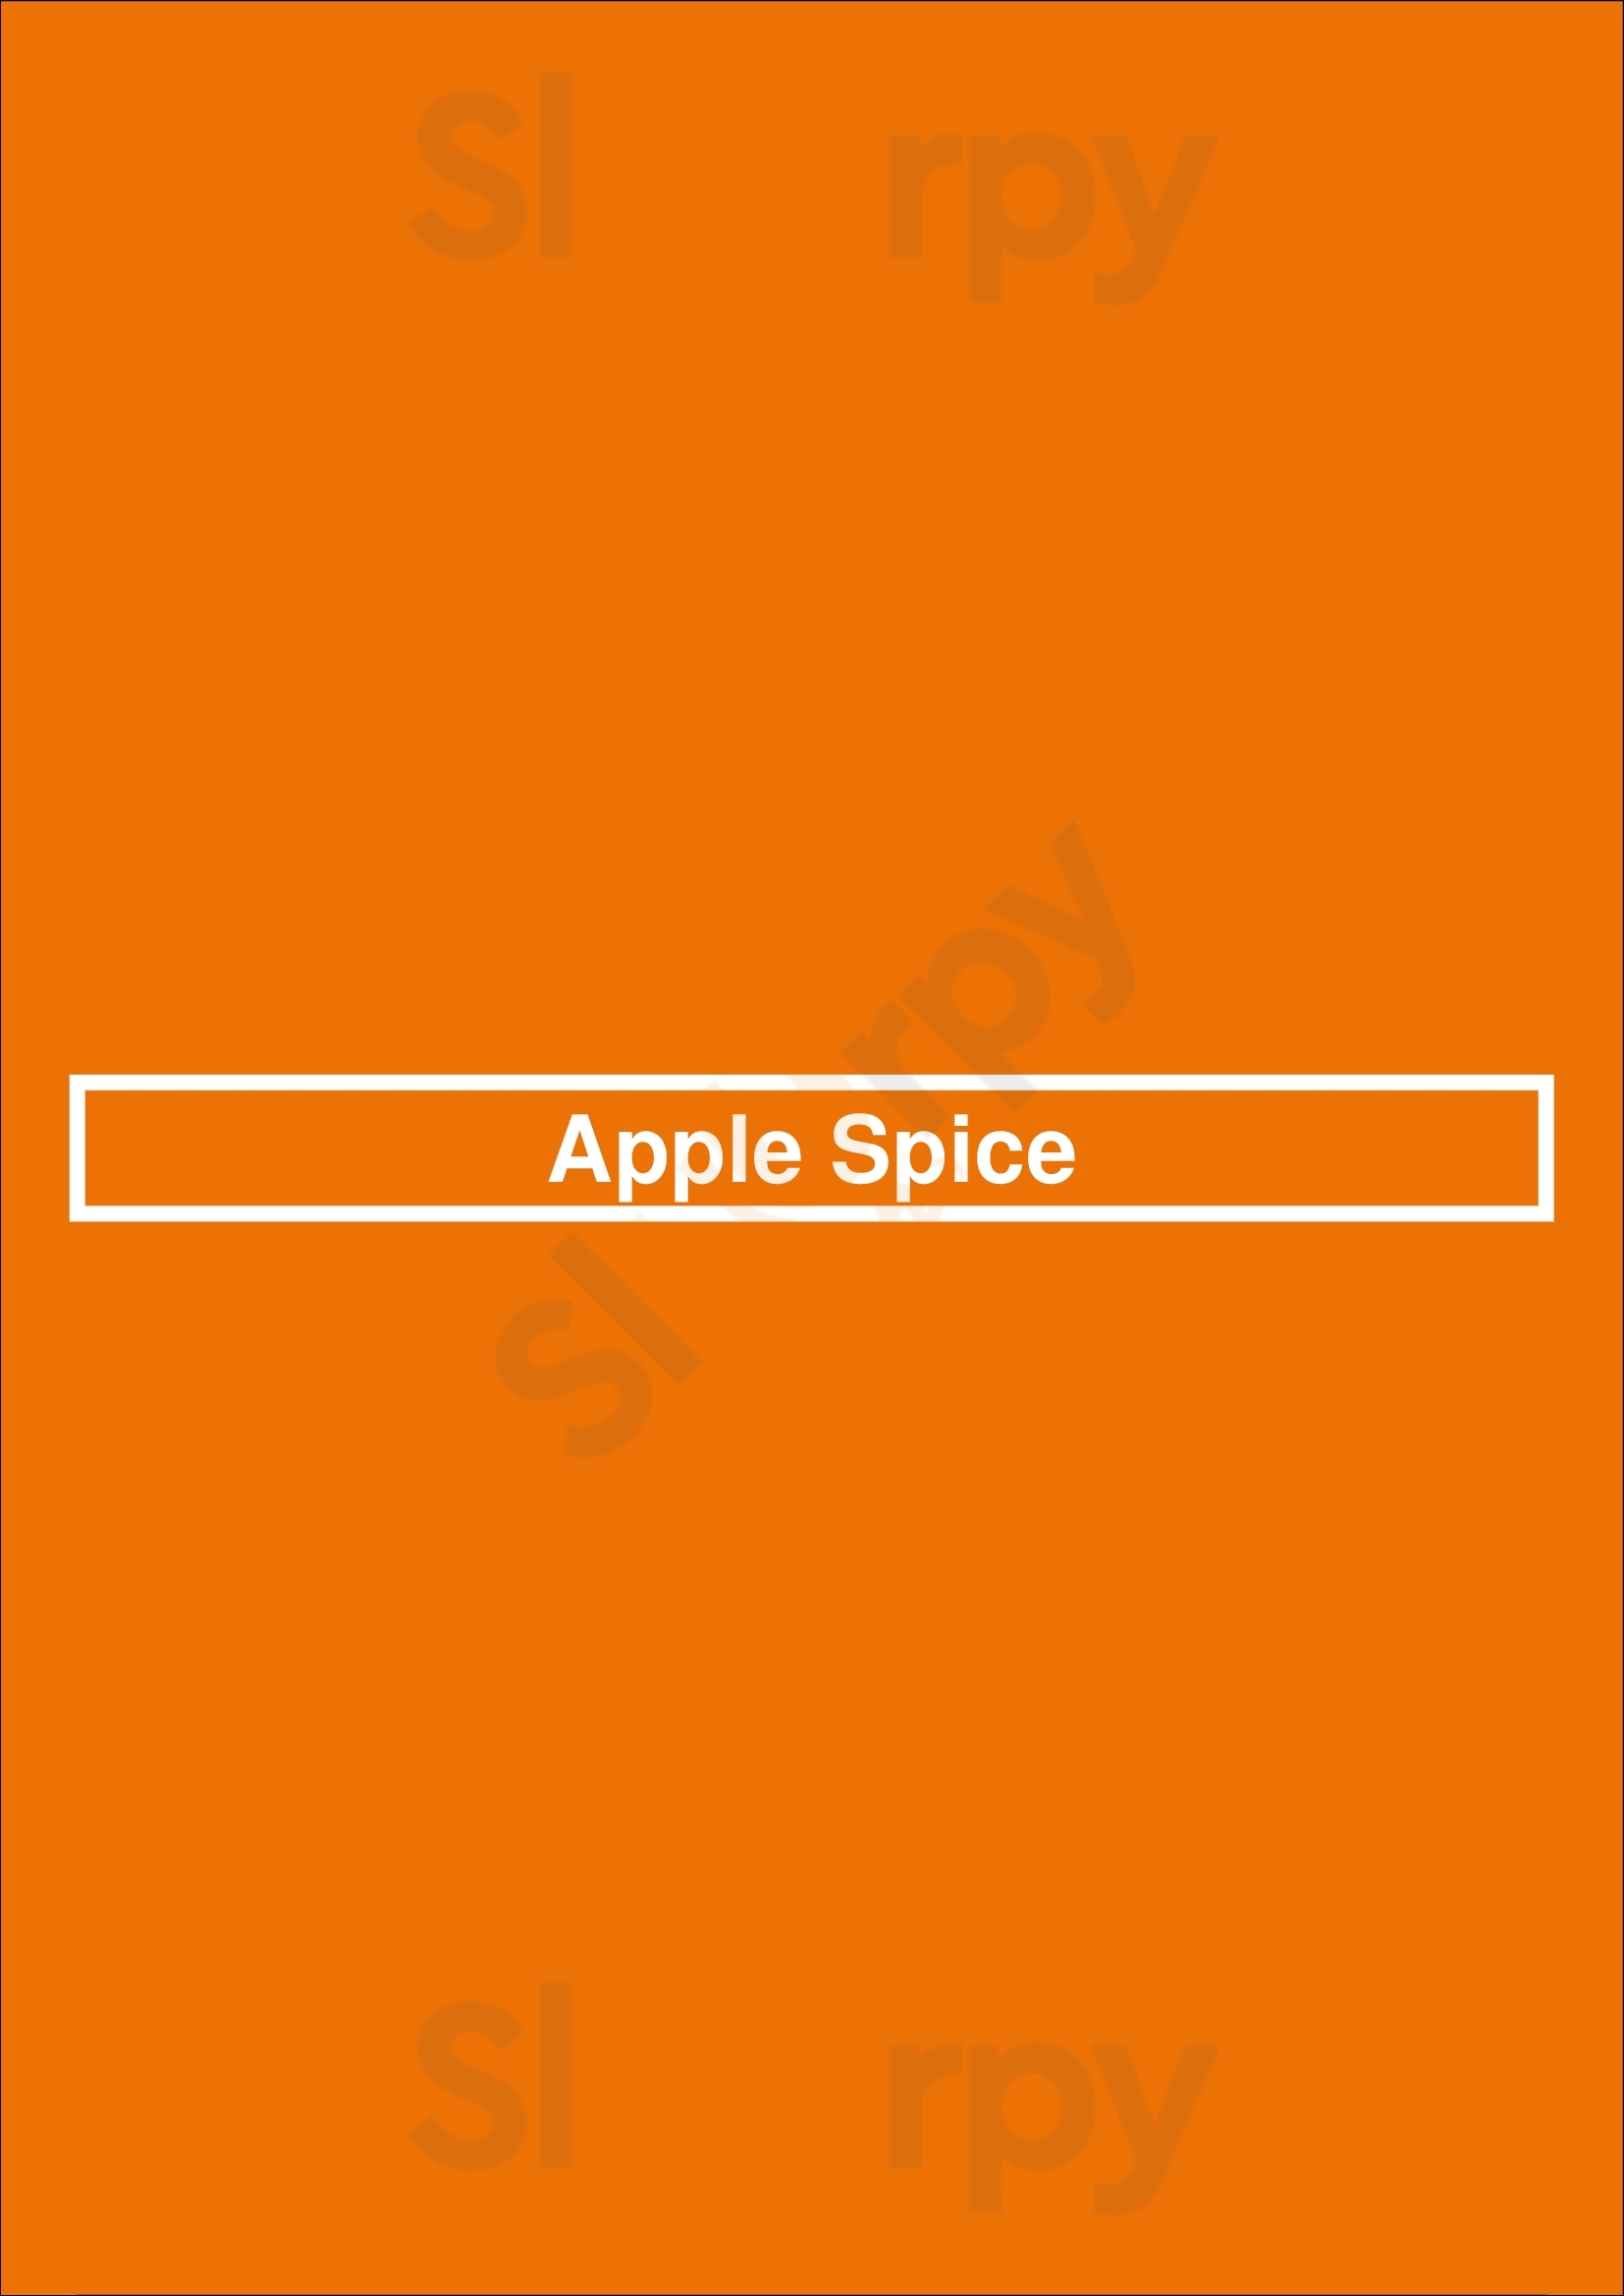 Apple Spice Compton Menu - 1